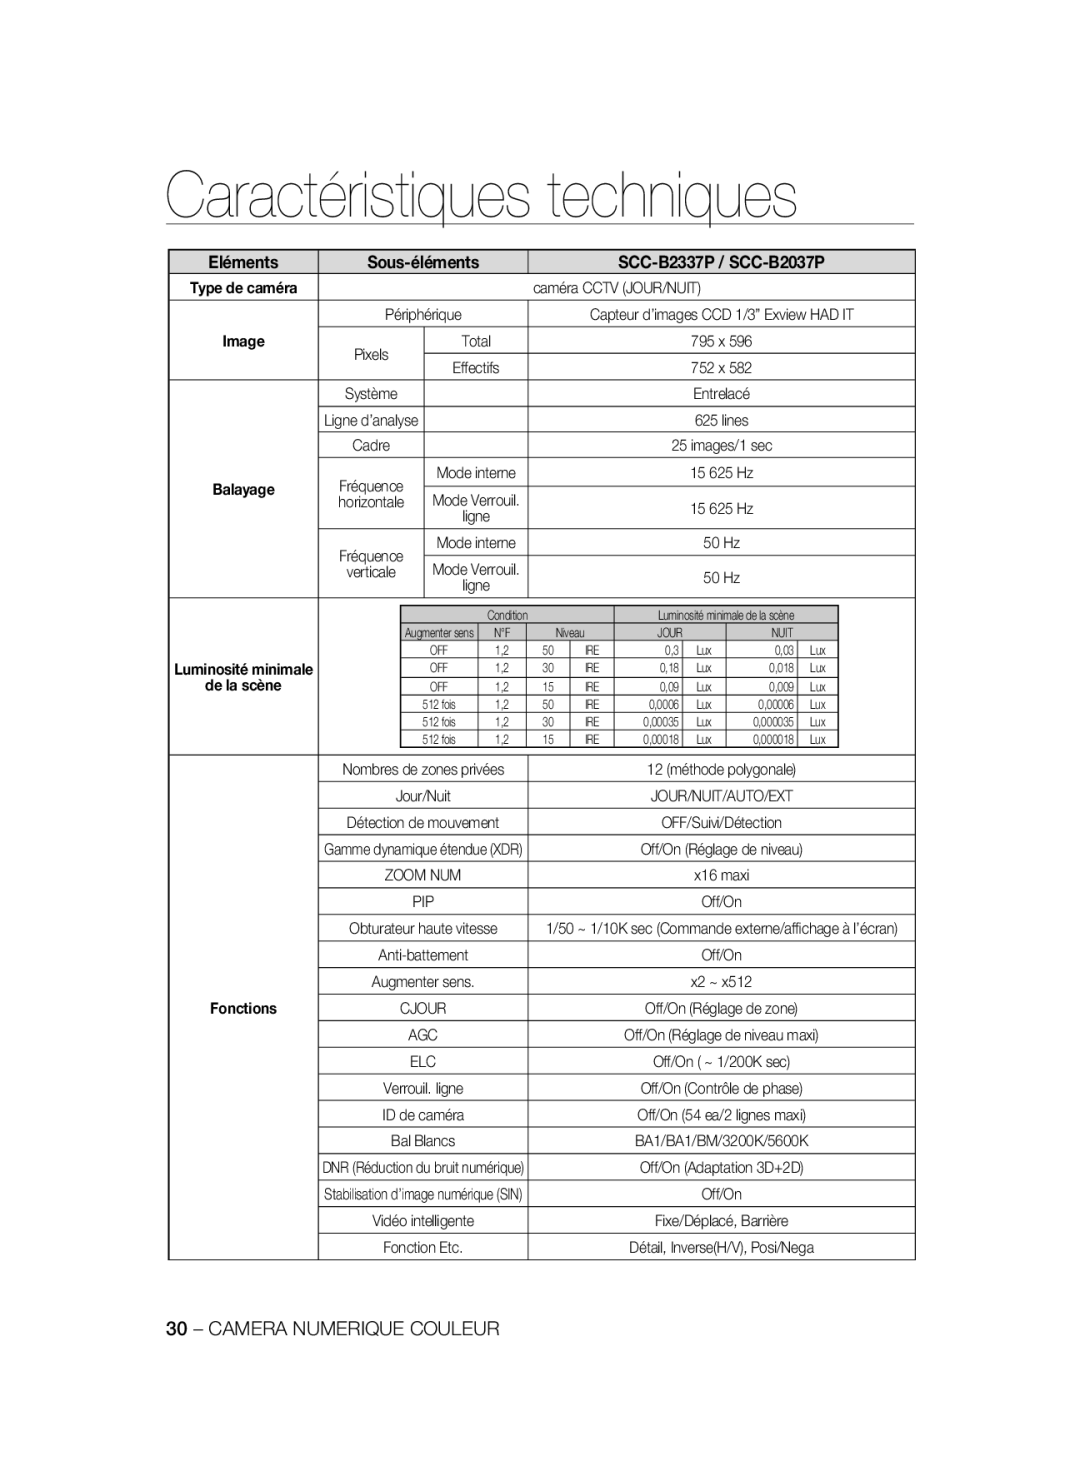 Samsung manual Caractéristiques techniques, Eléments, SCC-B2337P / SCC-B2037P, Sous-éléments, Image, de la scène 